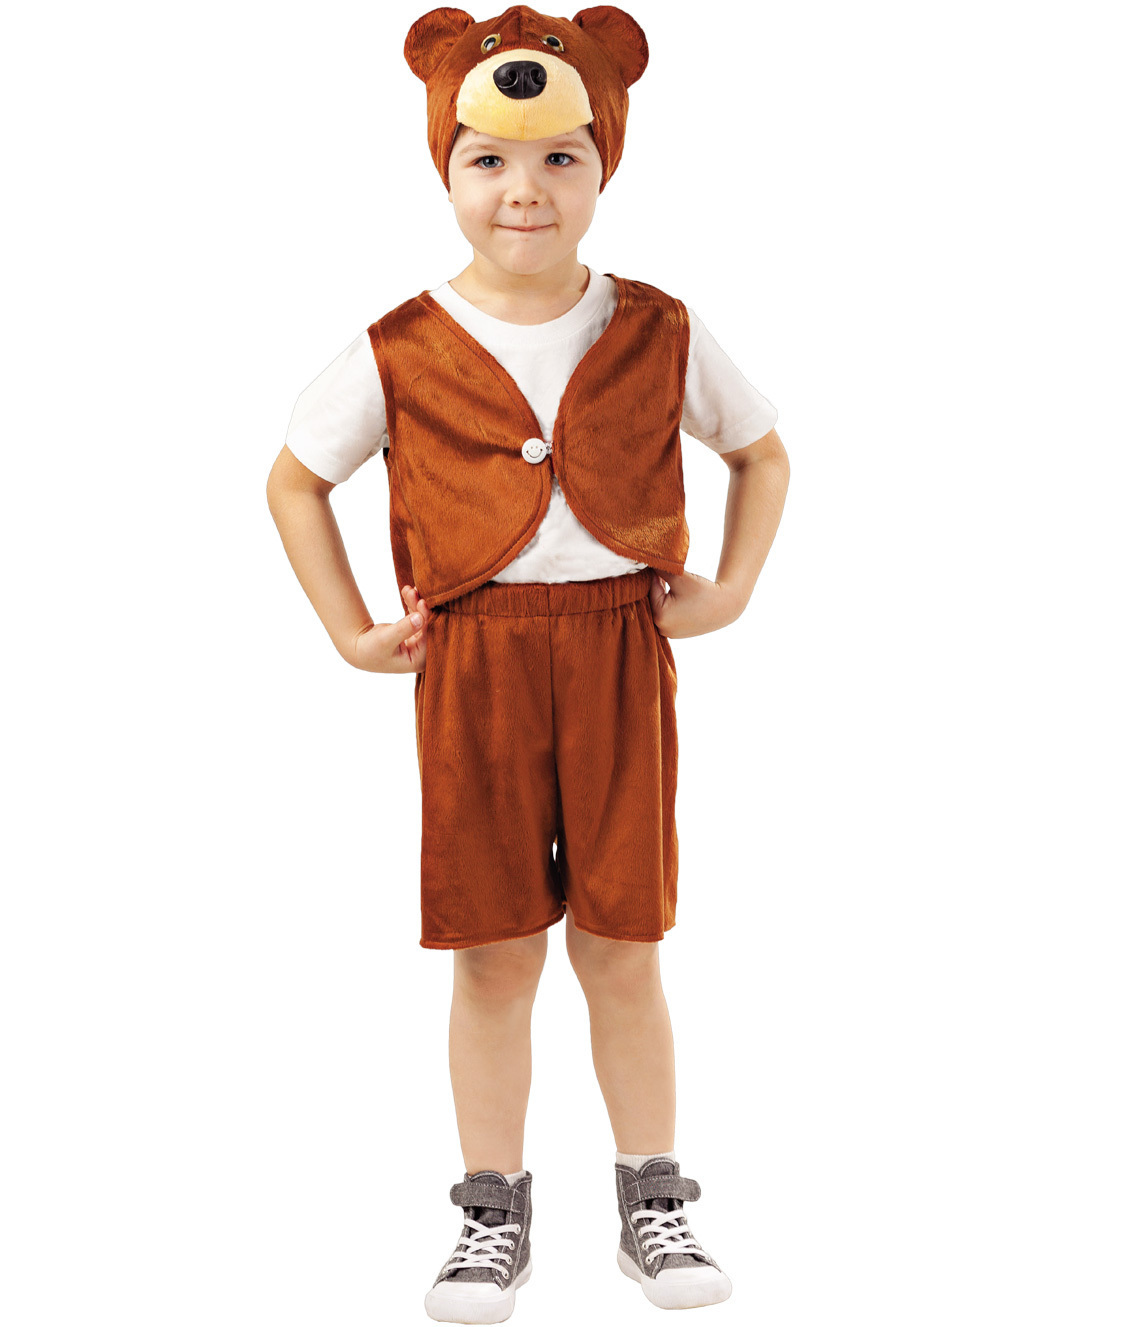 Карнавальный костюм Пуговка 4012 к-18 коричневый, 128 костюм карнавальный элит классик жук коричневый детский р 28 116 см